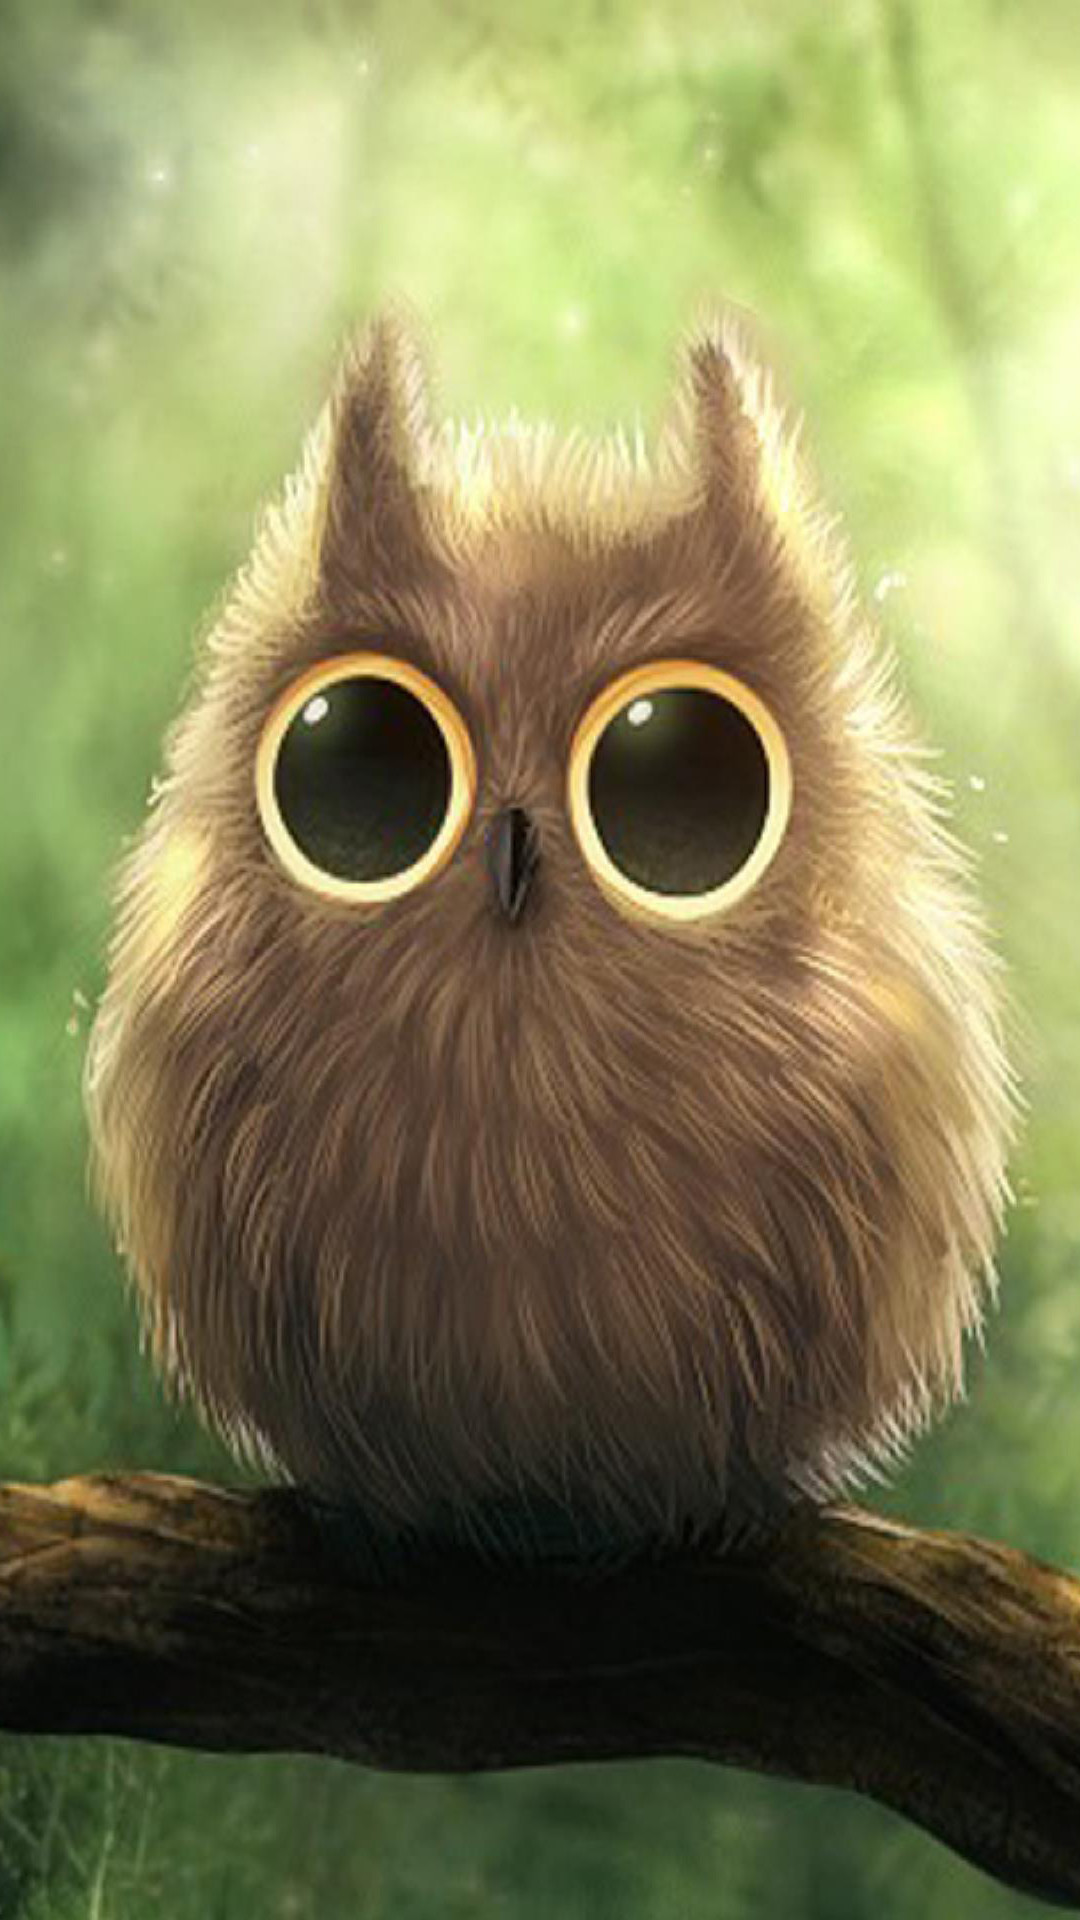 1080x1920 Cute Owl iPhone Wallpapers - WallpaperSafari